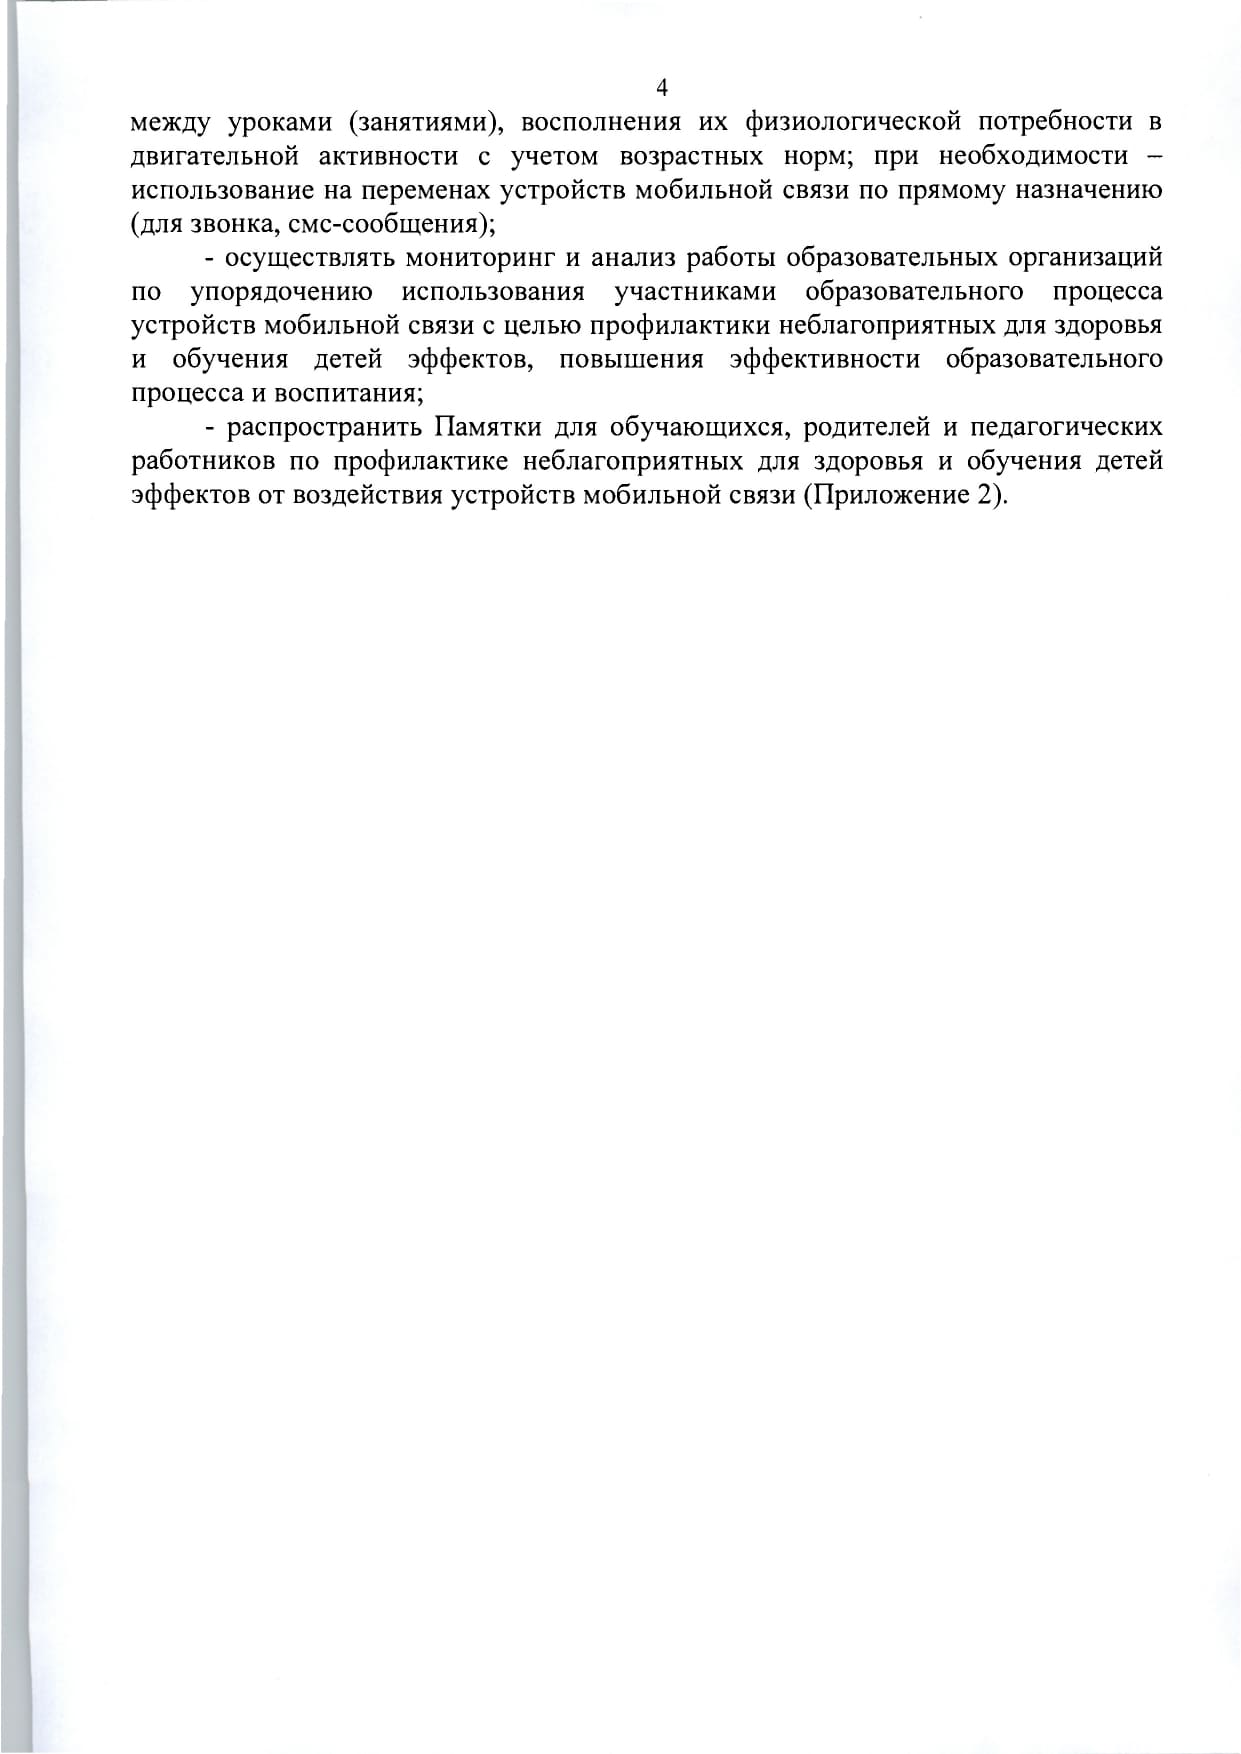 mr-telefony-v-obrazovatelnykh-org- 1  page-0006